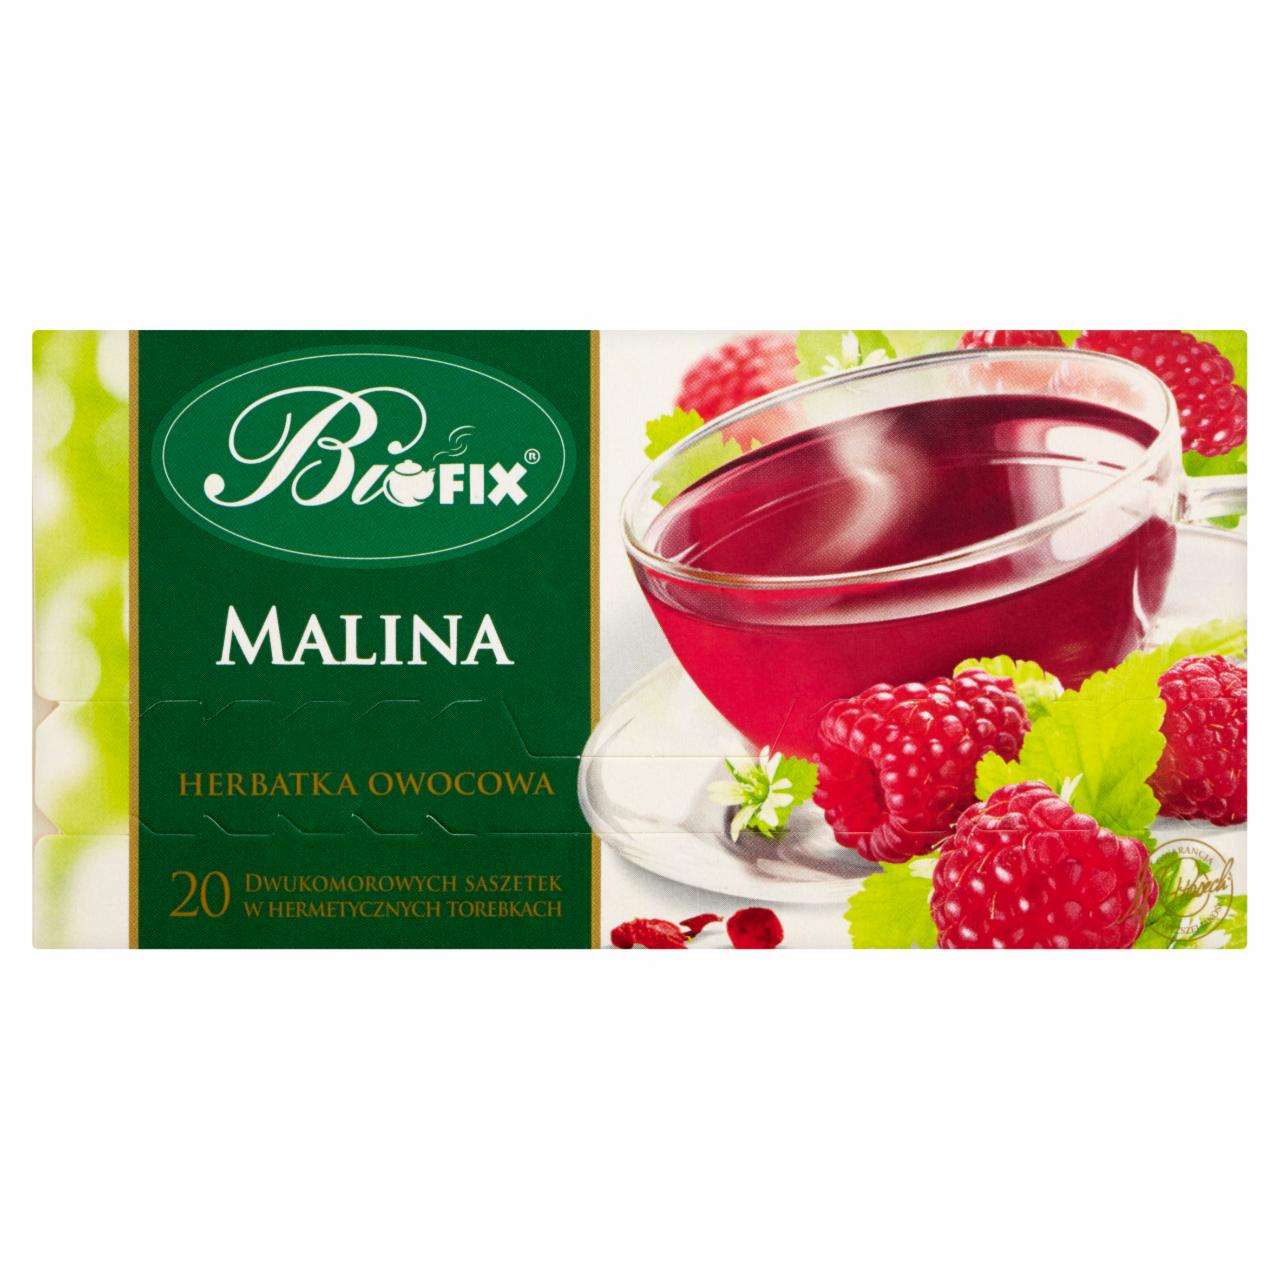 Zdjęcia - Bifix Premium malina Herbatka owocowa 40 g (20 saszetek)